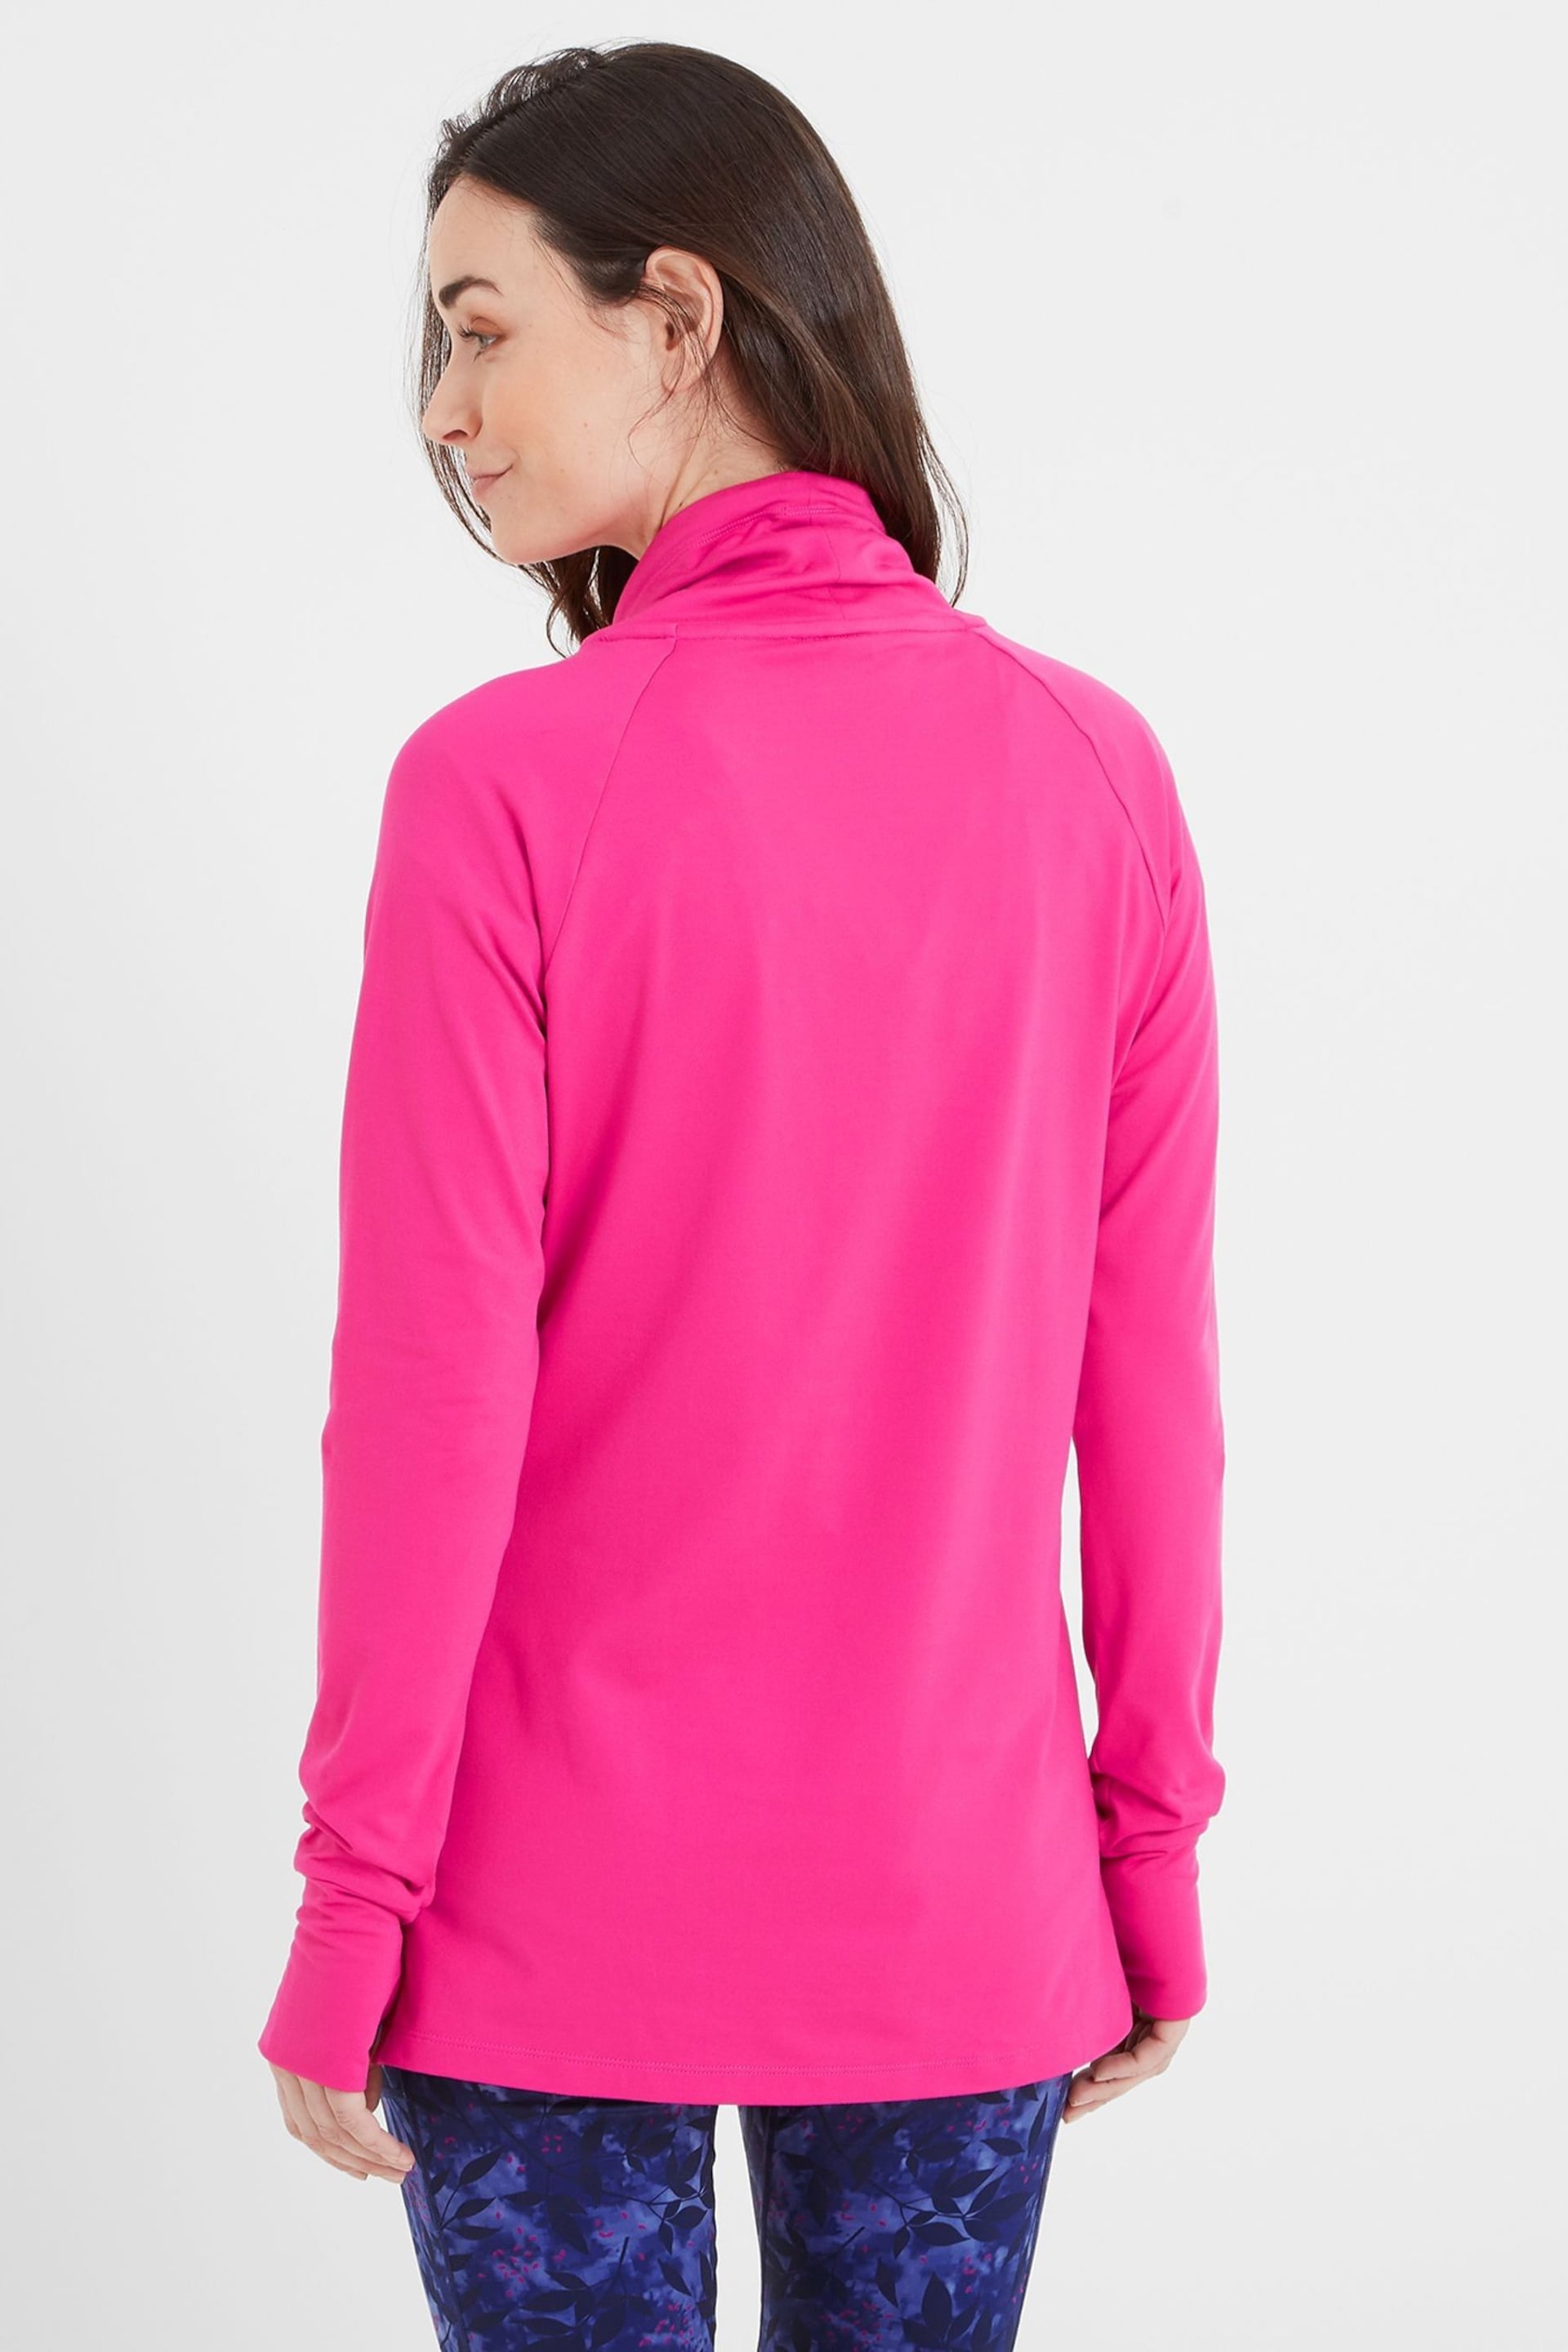 Tog 24 Pink Vibrant Dunn Tech Sweatshirt - Image 2 of 9